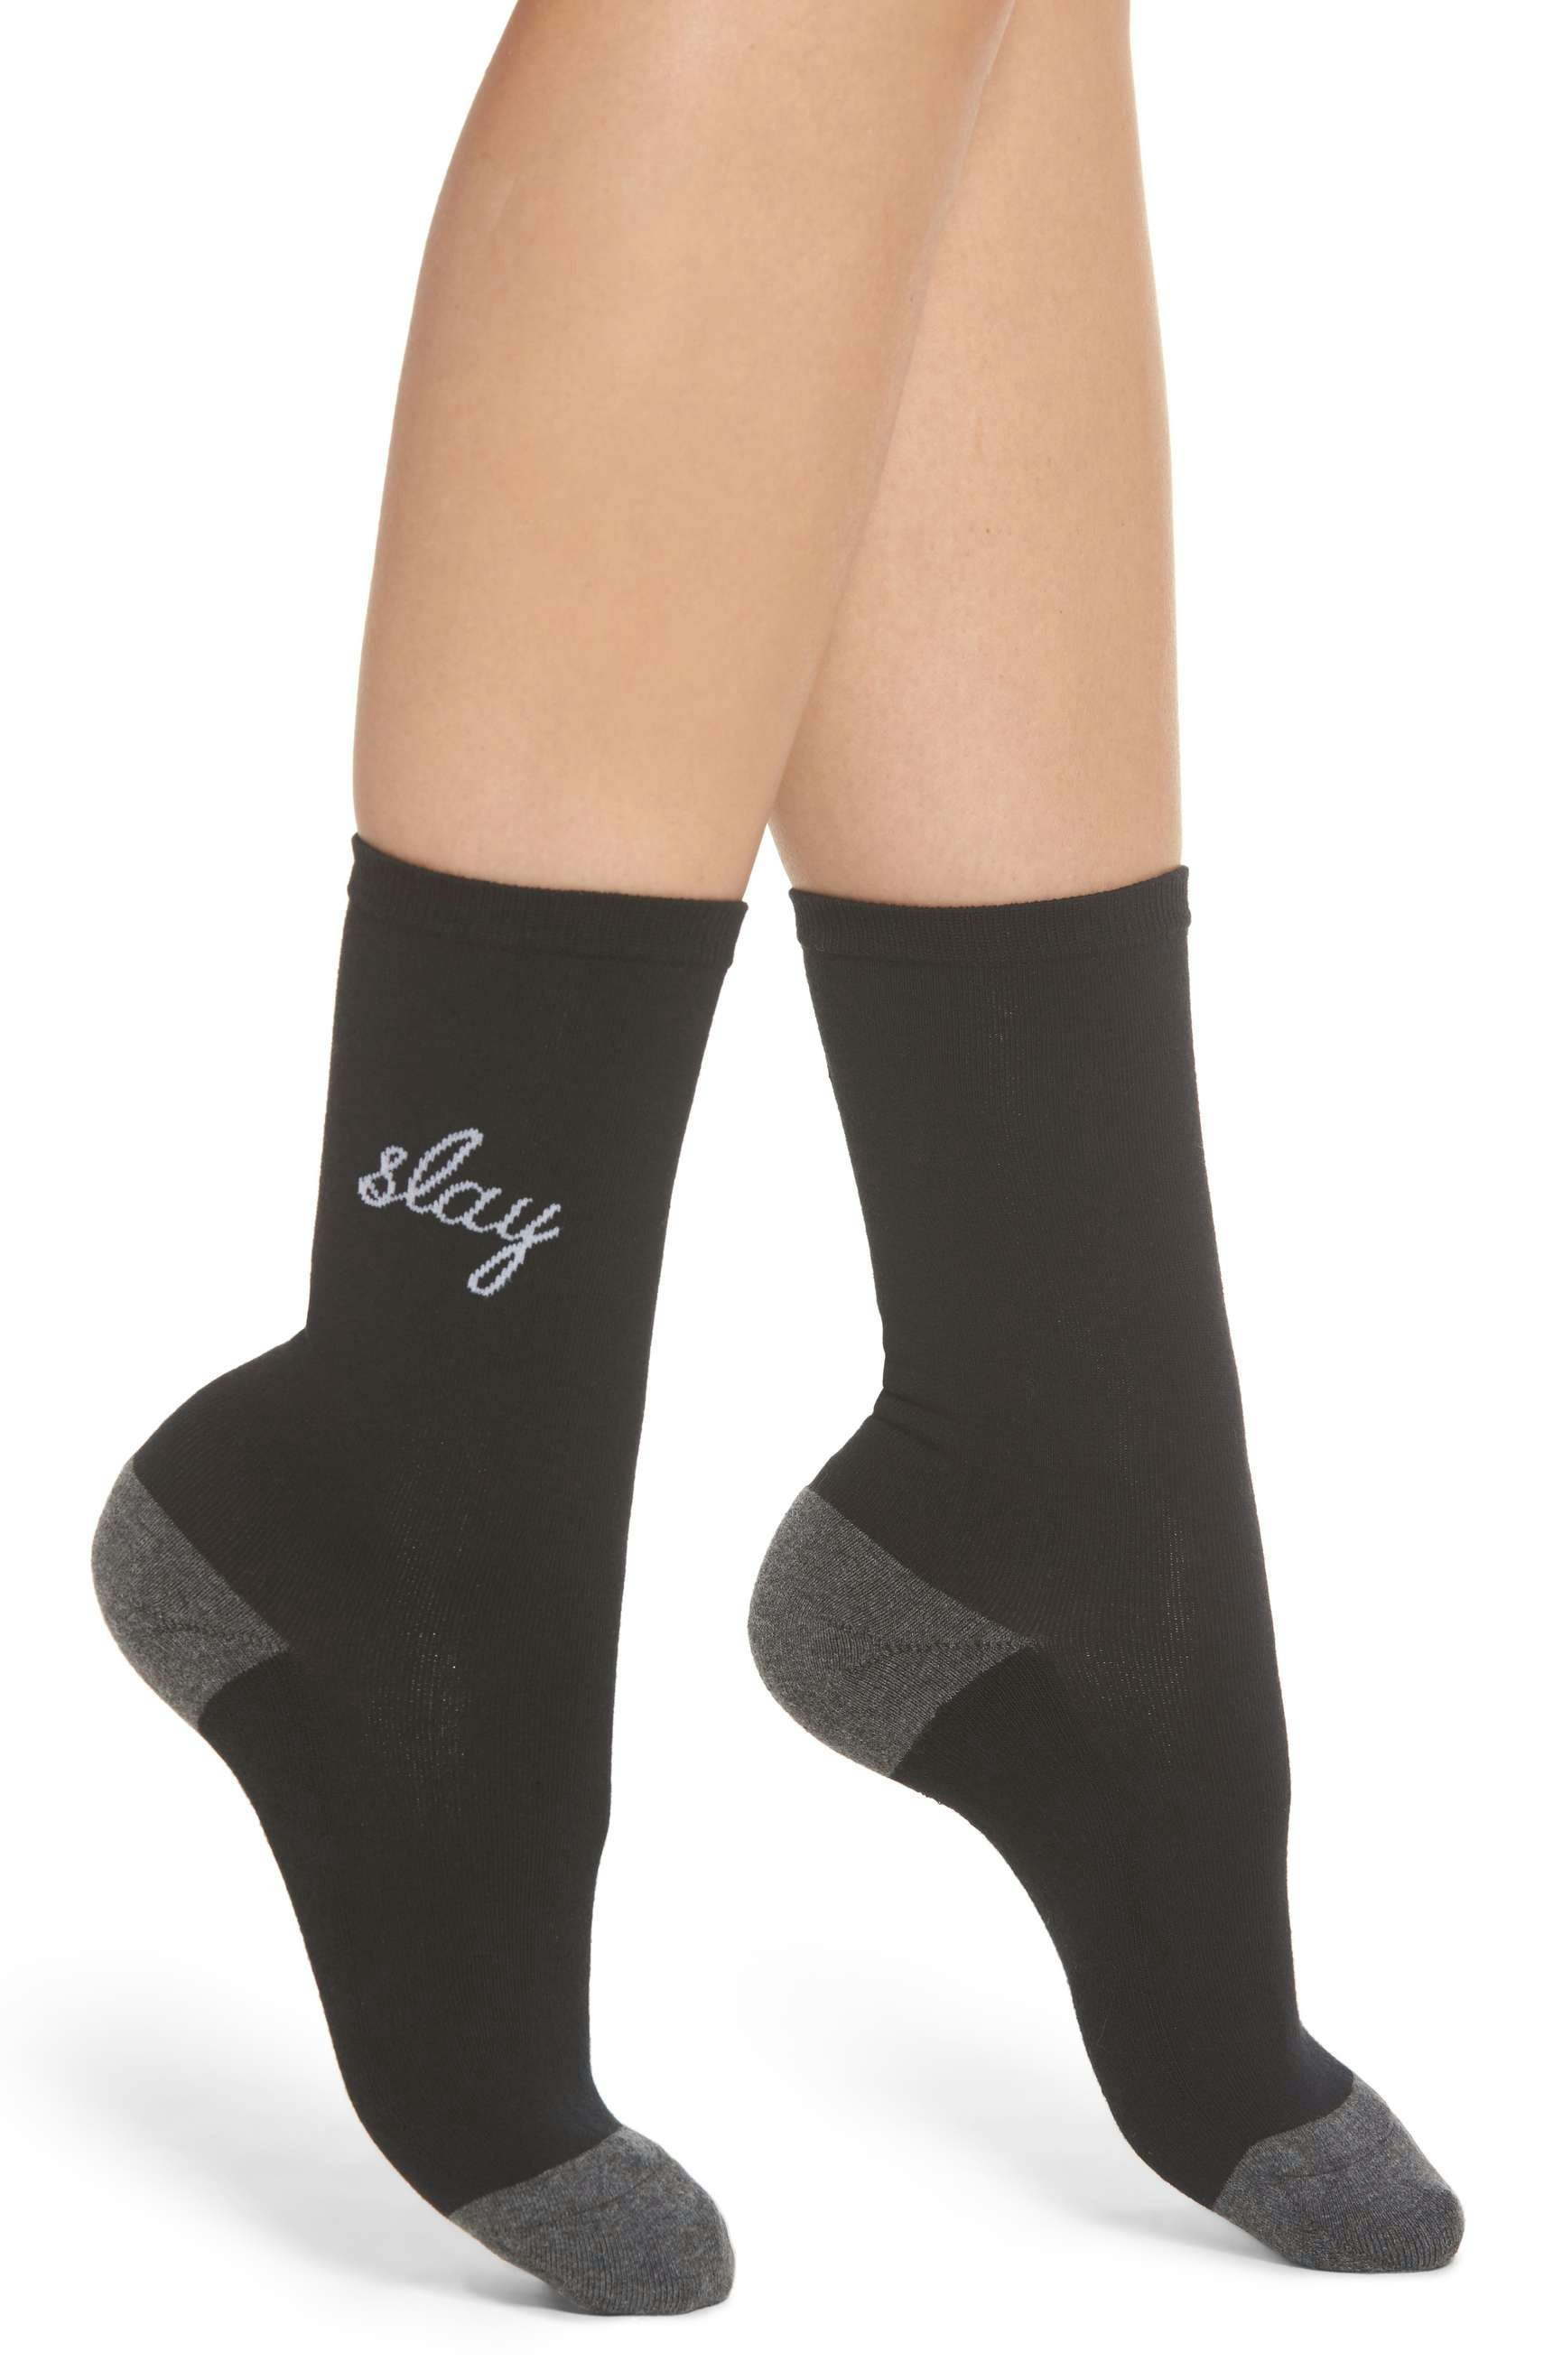 Women's Funny Socks *SLAY* NWT